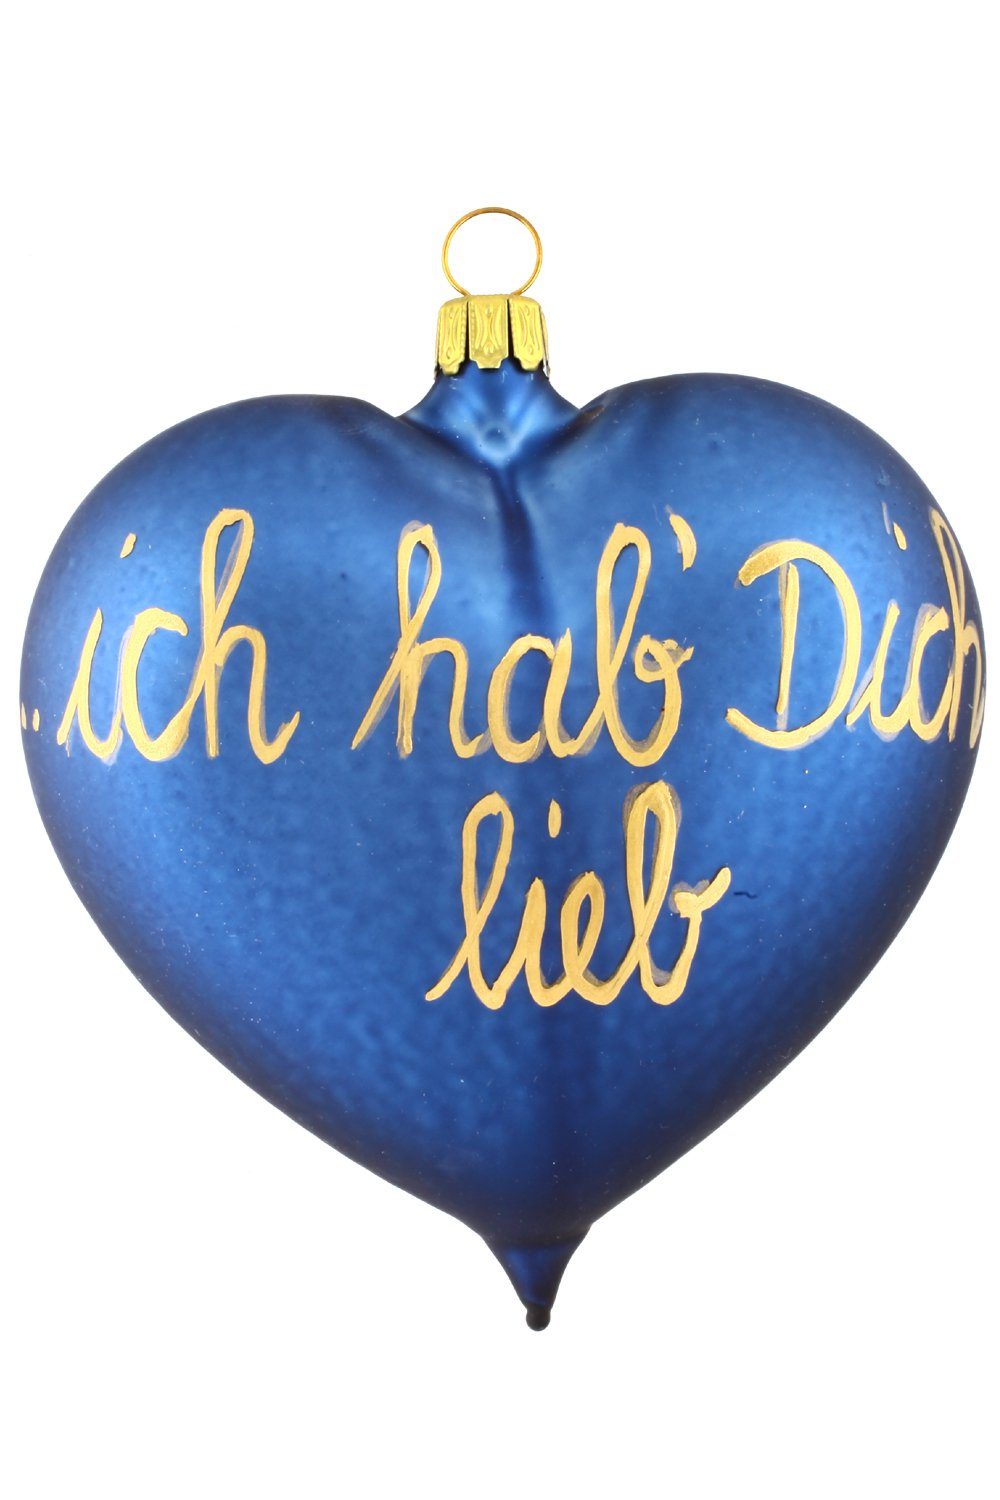 Hamburger Weihnachtskontor Christbaumschmuck "ich mundgeblasen blau, - Dich - handdekoriert lieb" Herz hab` Dekohänger